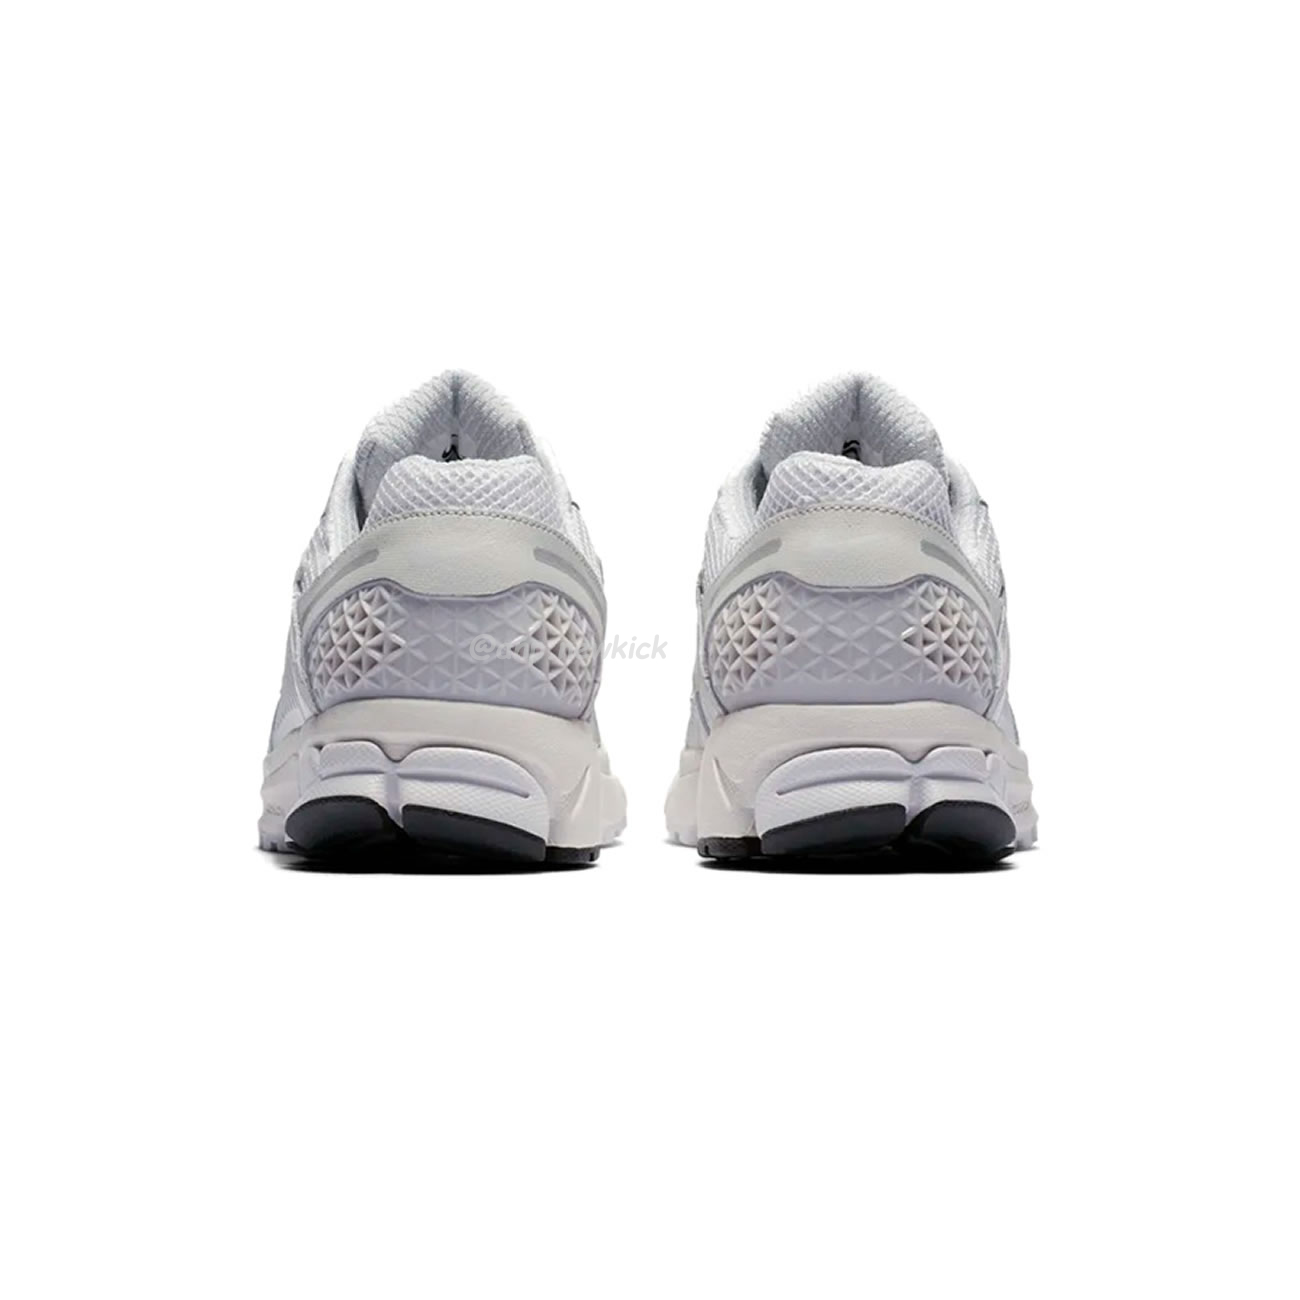 Nike Zoom Vomero 5 Sp Vast Grey Bv1358 001 (11) - newkick.org